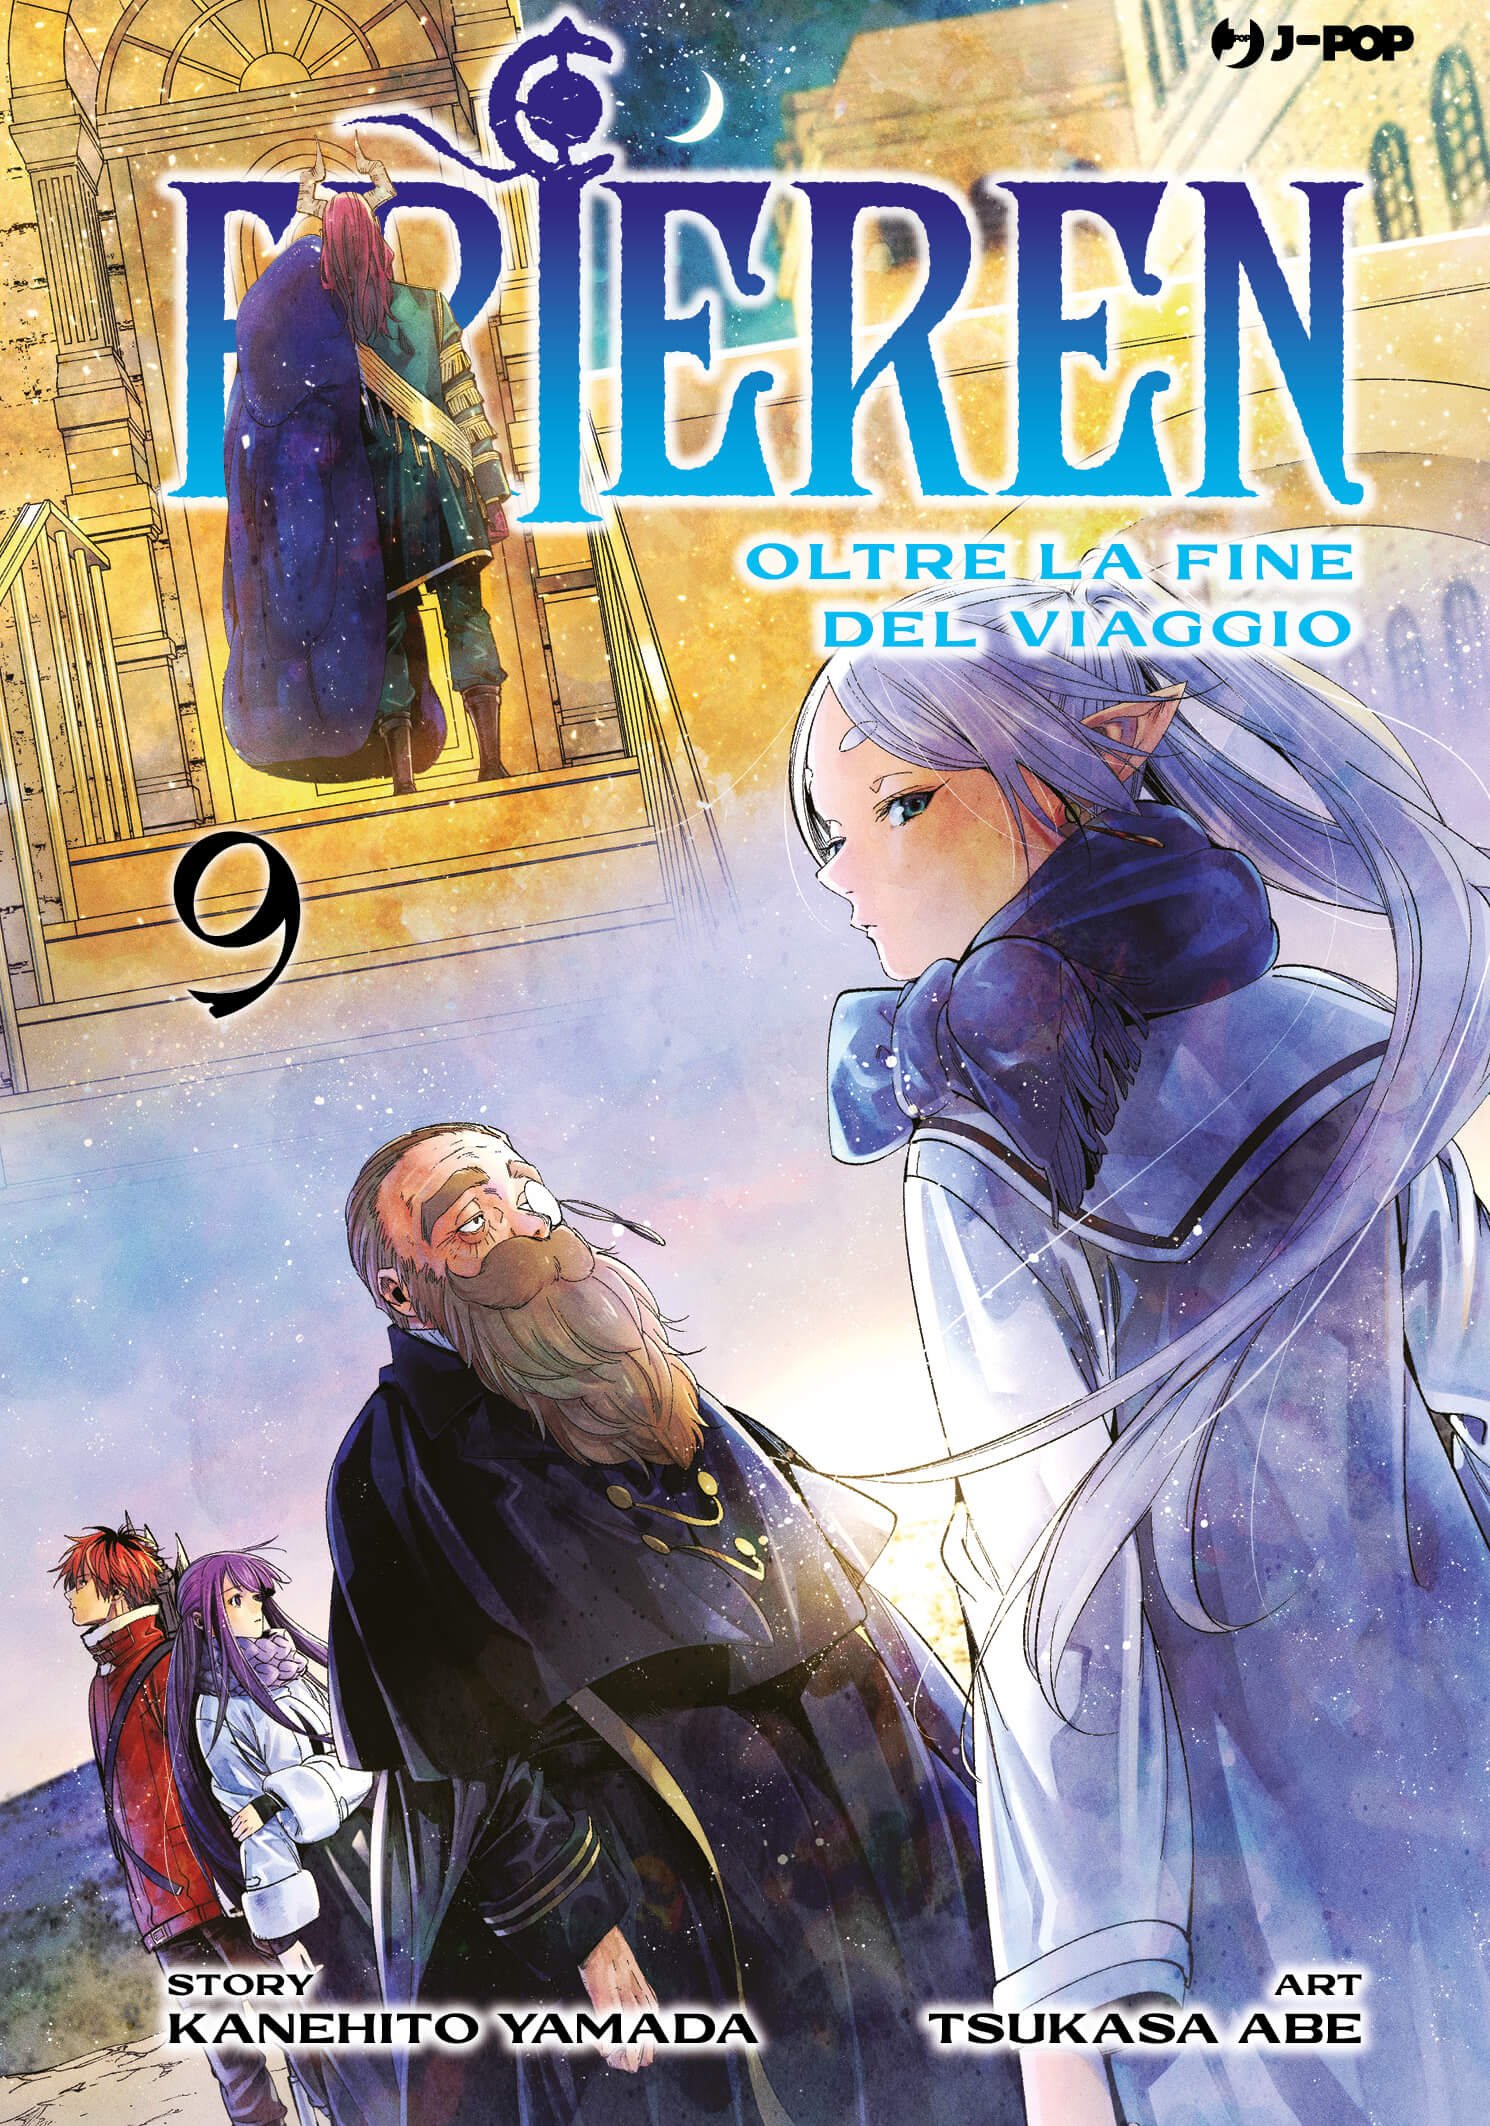 Frieren - Beyond the Journey's End 9, parmi les sorties J-POP Manga du 18 janvier 2023